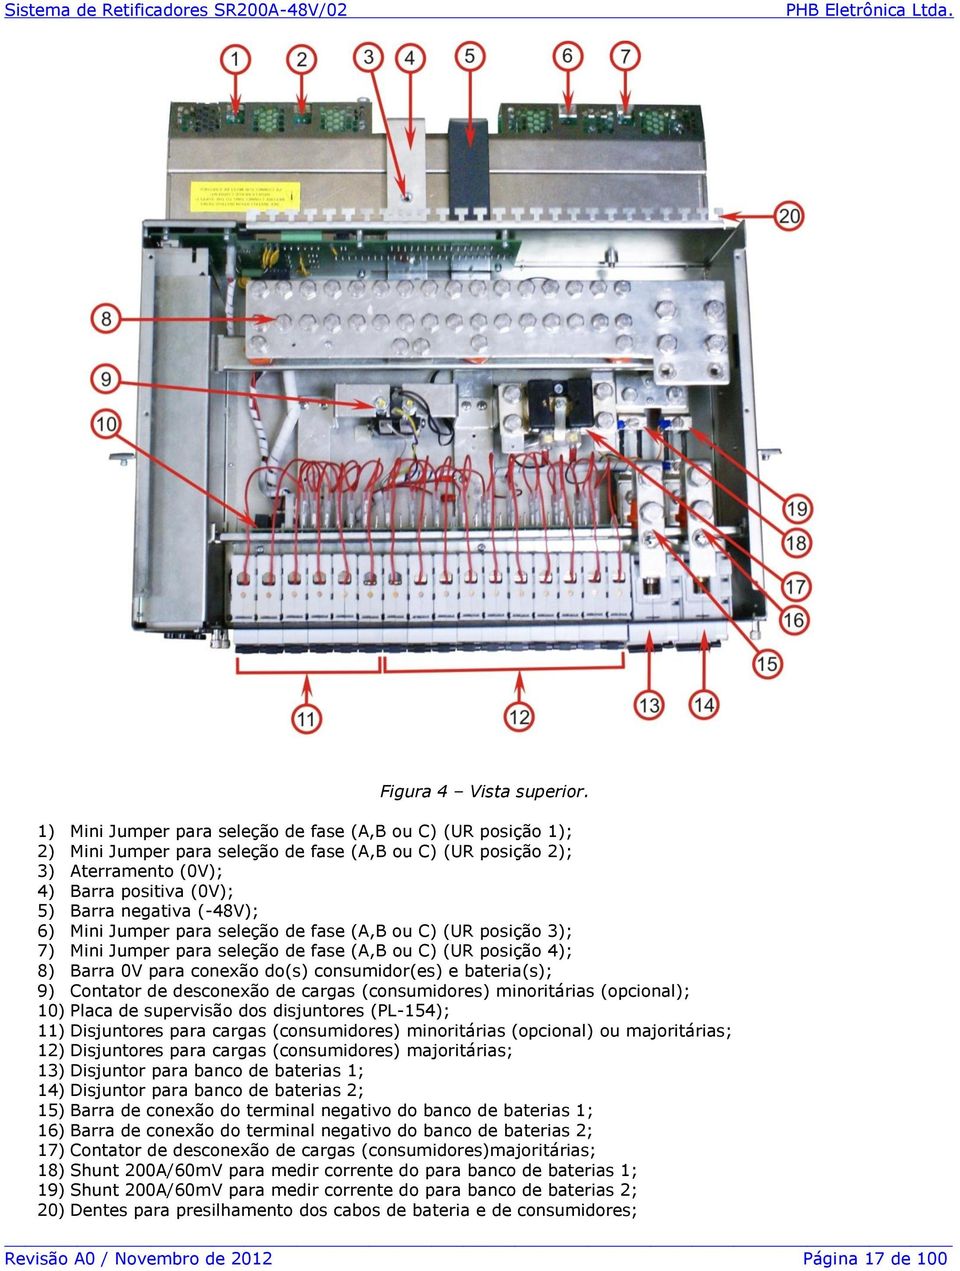 Mini Jumper para seleção de fase (A,B ou C) (UR posição 3); 7) Mini Jumper para seleção de fase (A,B ou C) (UR posição 4); 8) Barra 0V para conexão do(s) consumidor(es) e bateria(s); 9) Contator de